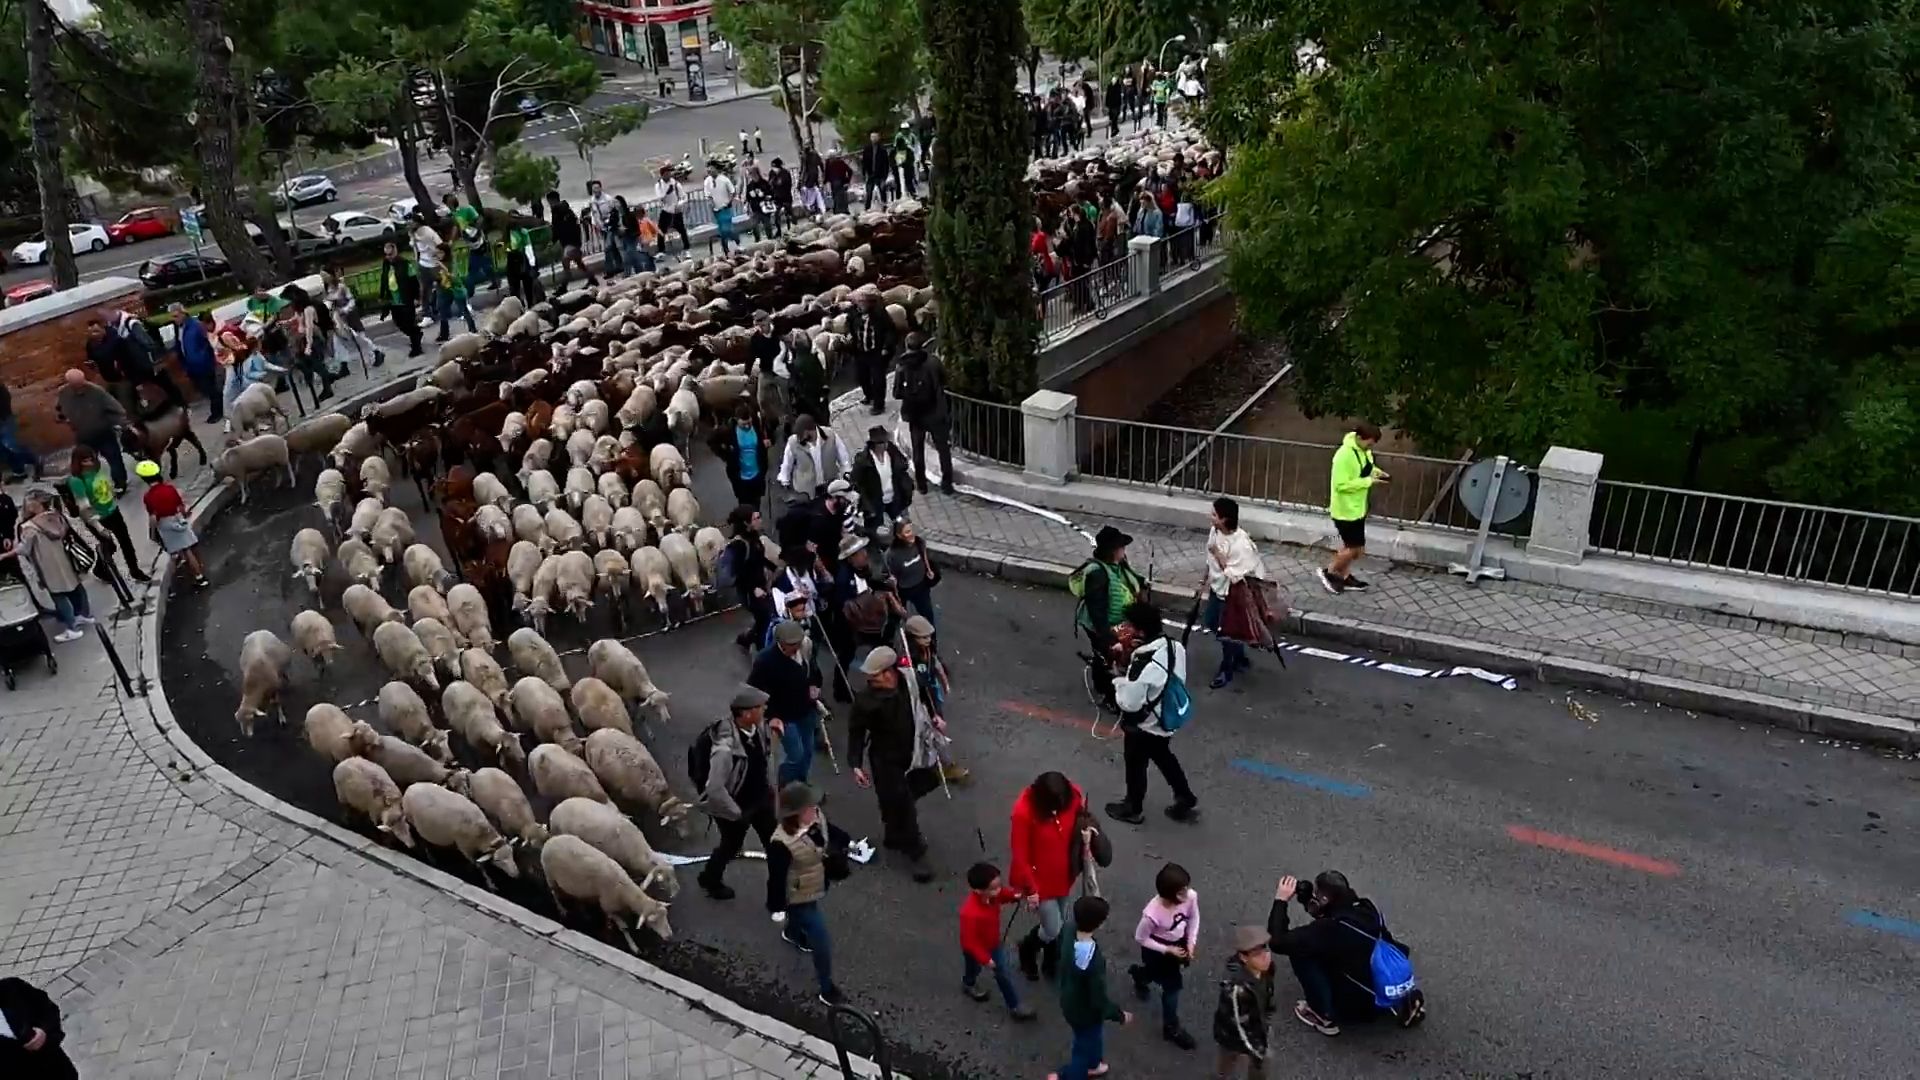 1000 овец прошли по улицам Мадрида в рамках фестиваля отгонного животноводства Видео,Репортажи,ФАН-ТВ